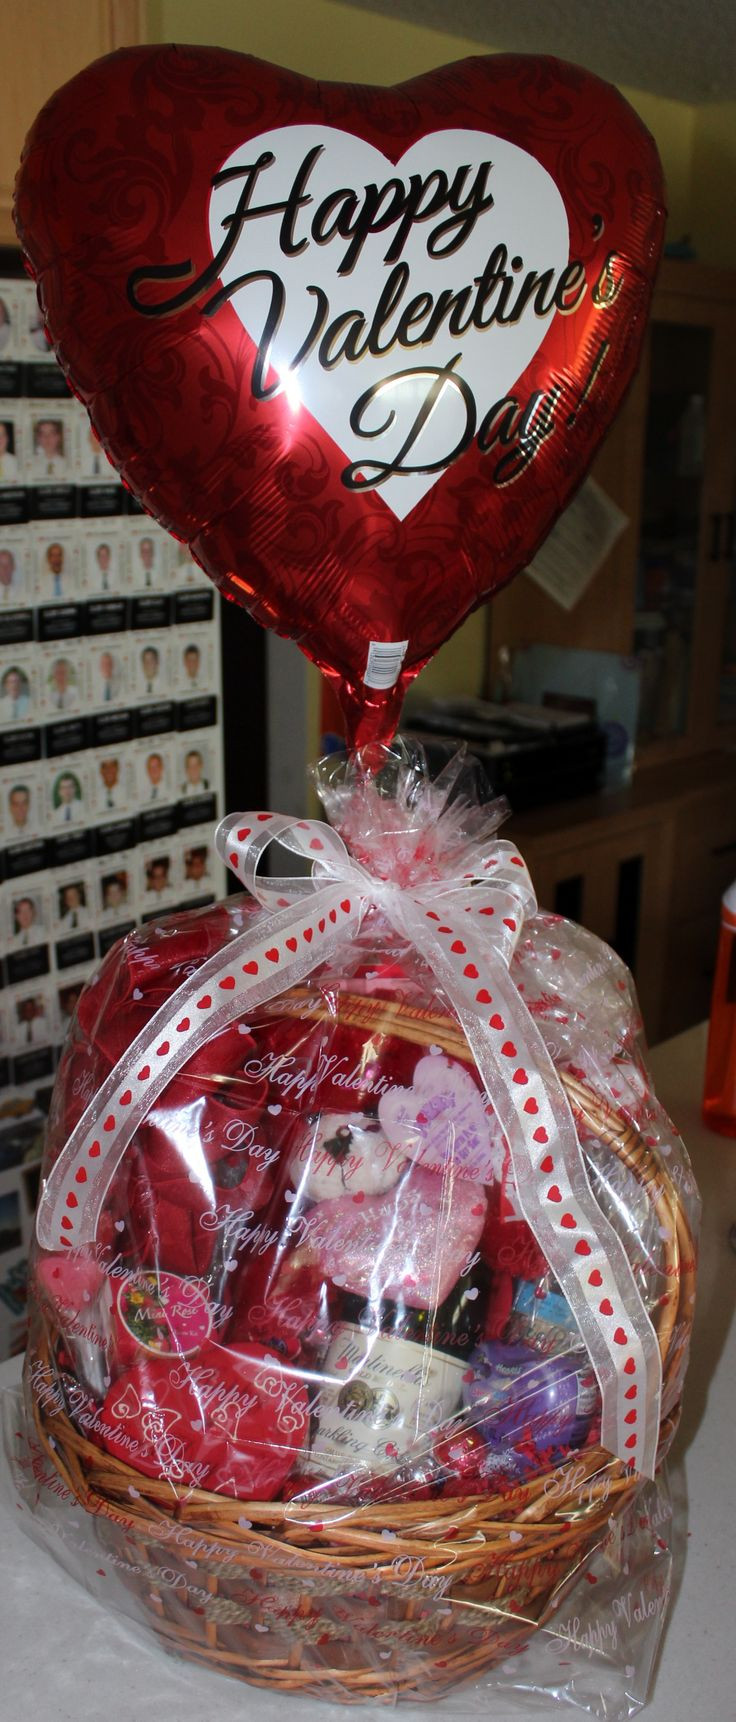 Valentine Candy Gift Ideas
 Best 25 Valentine t baskets ideas on Pinterest